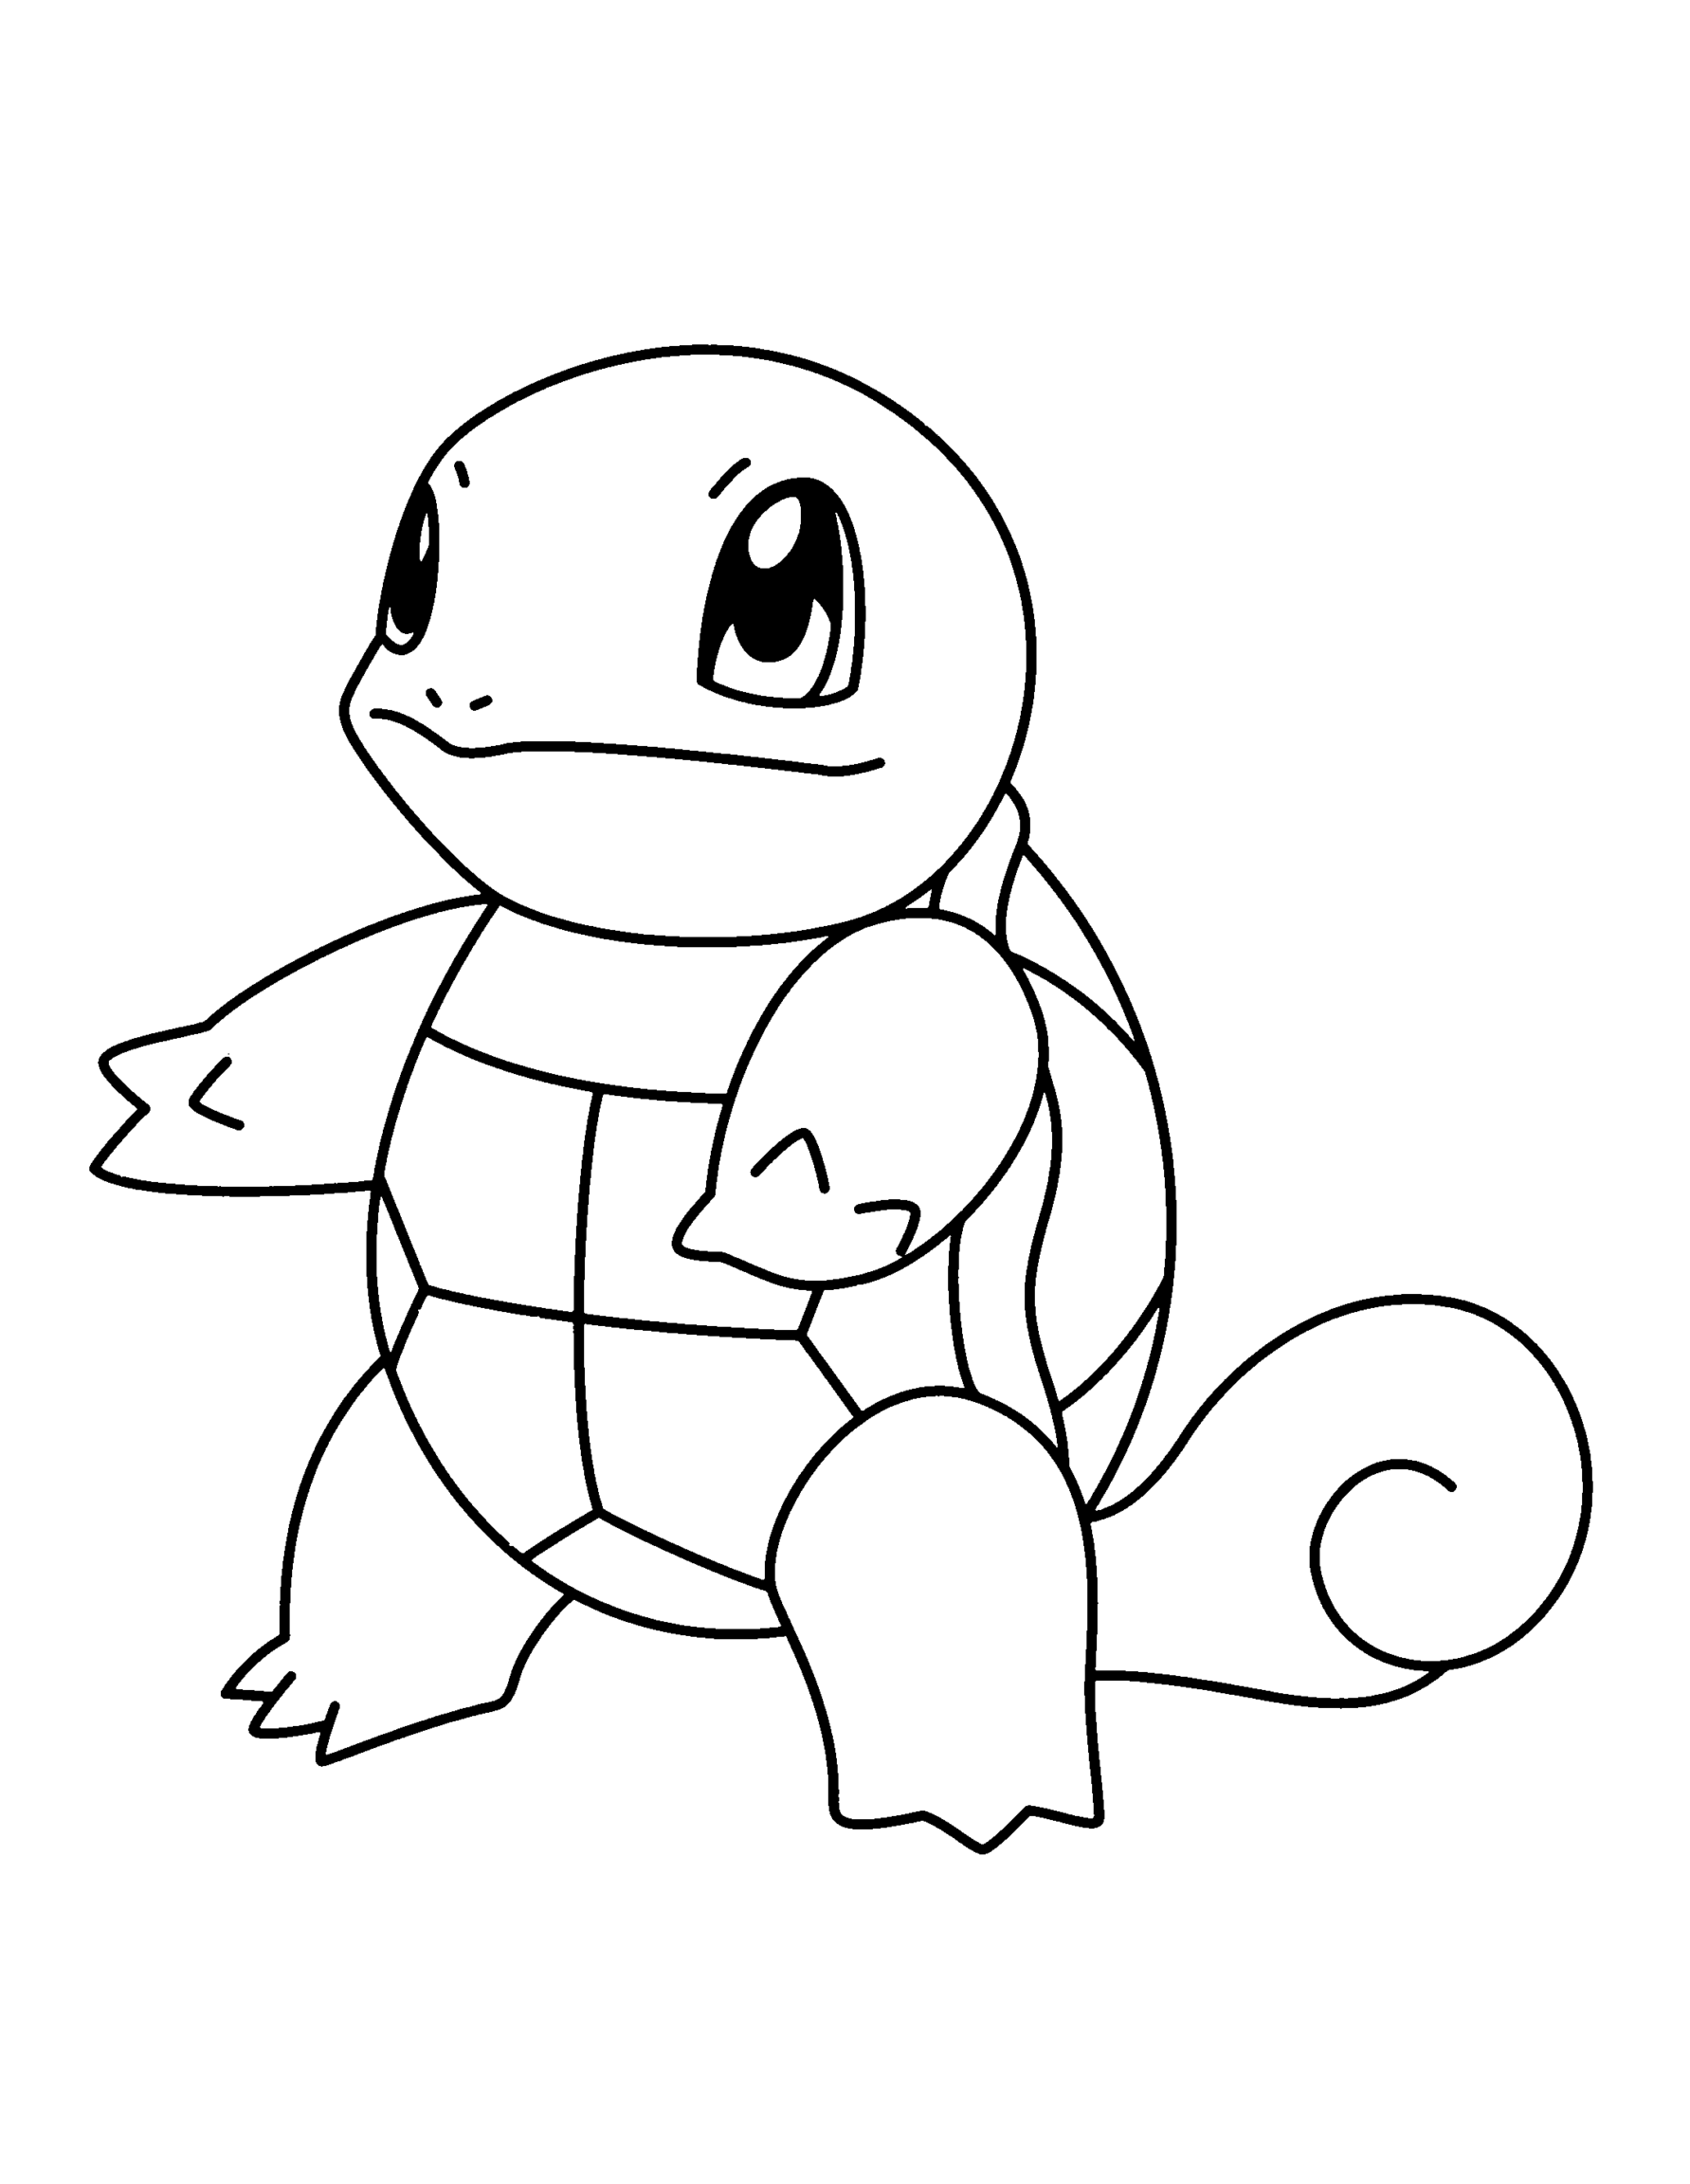 Dibujos de Squirtle para imprimir y colorear – Pokemon